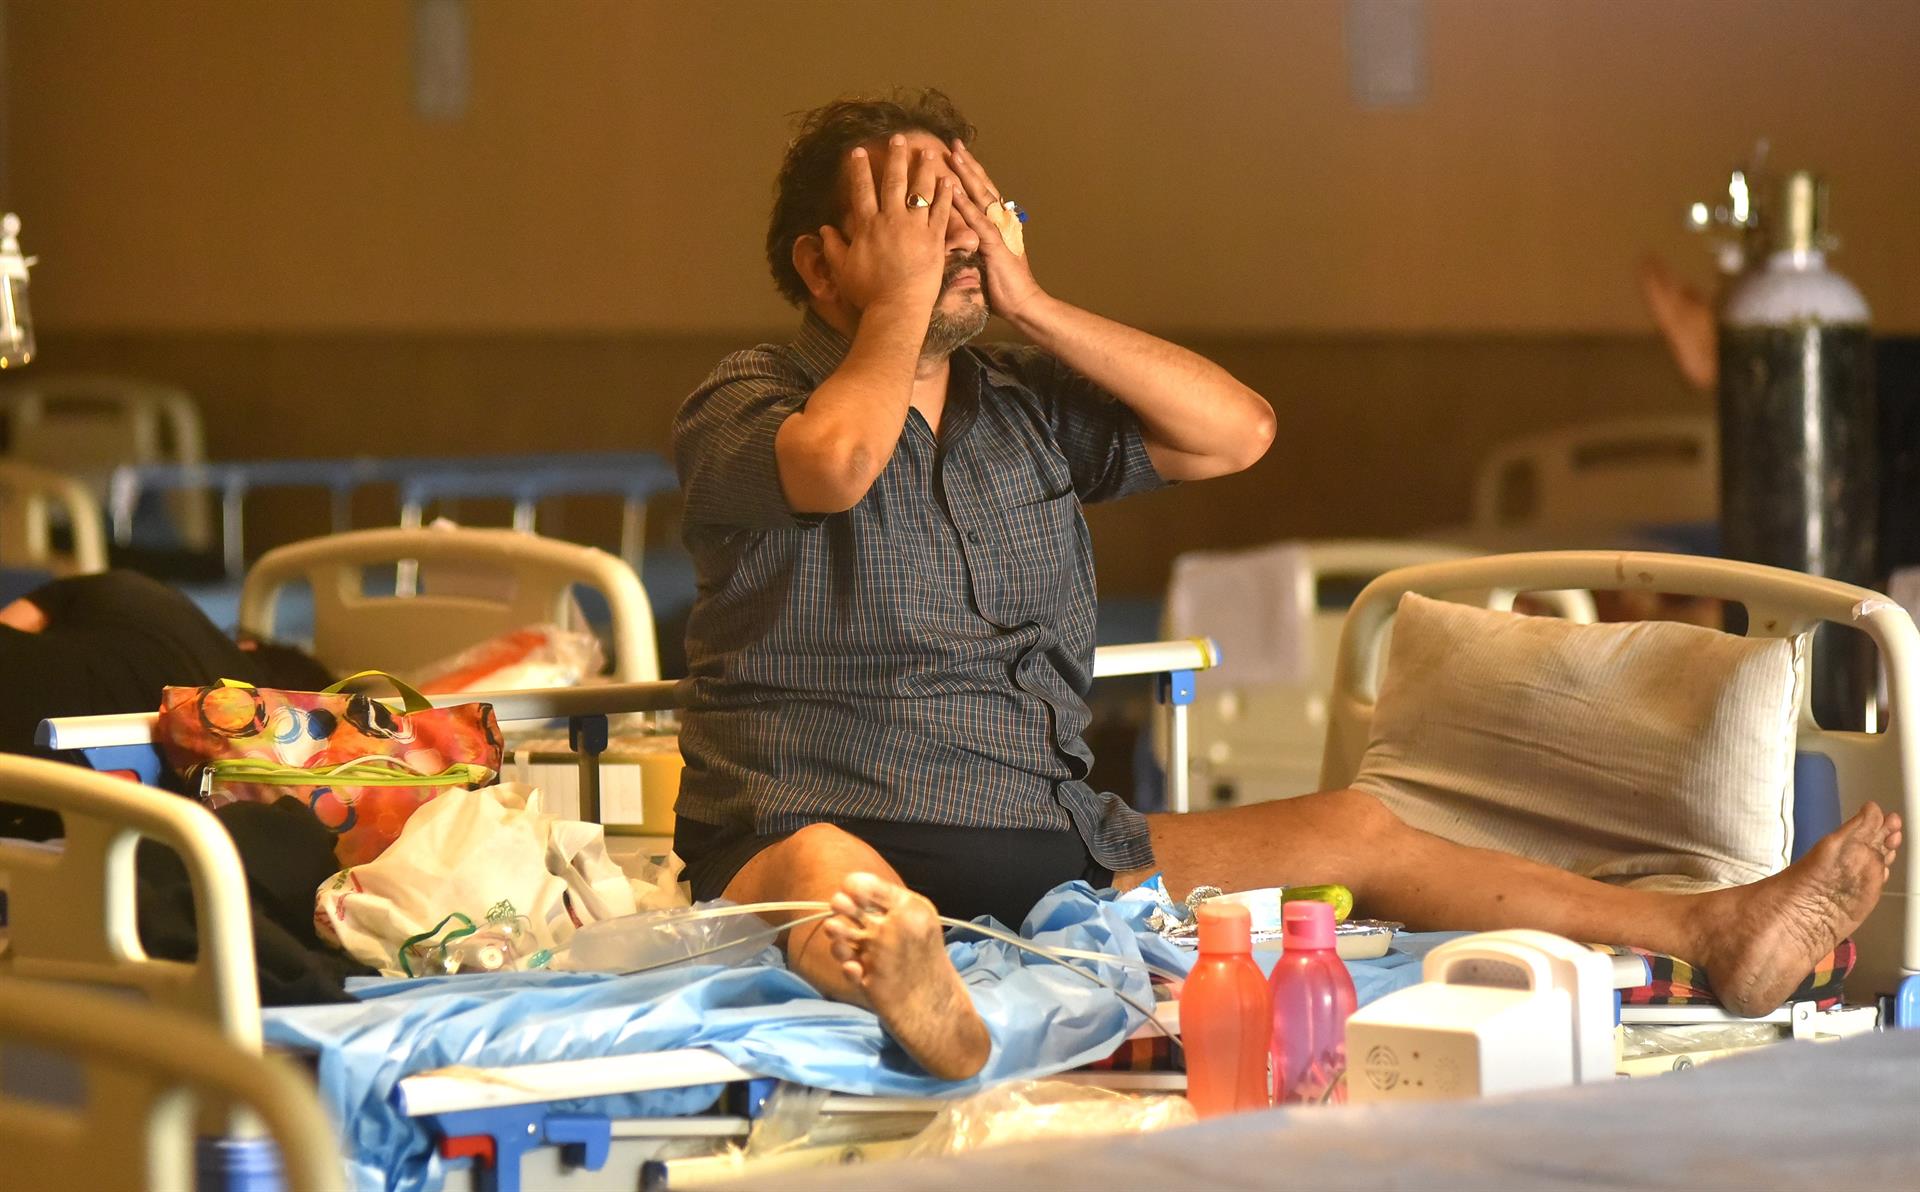 Tragedia en India: Al menos 11 muertos por falta de oxígeno en un hospital